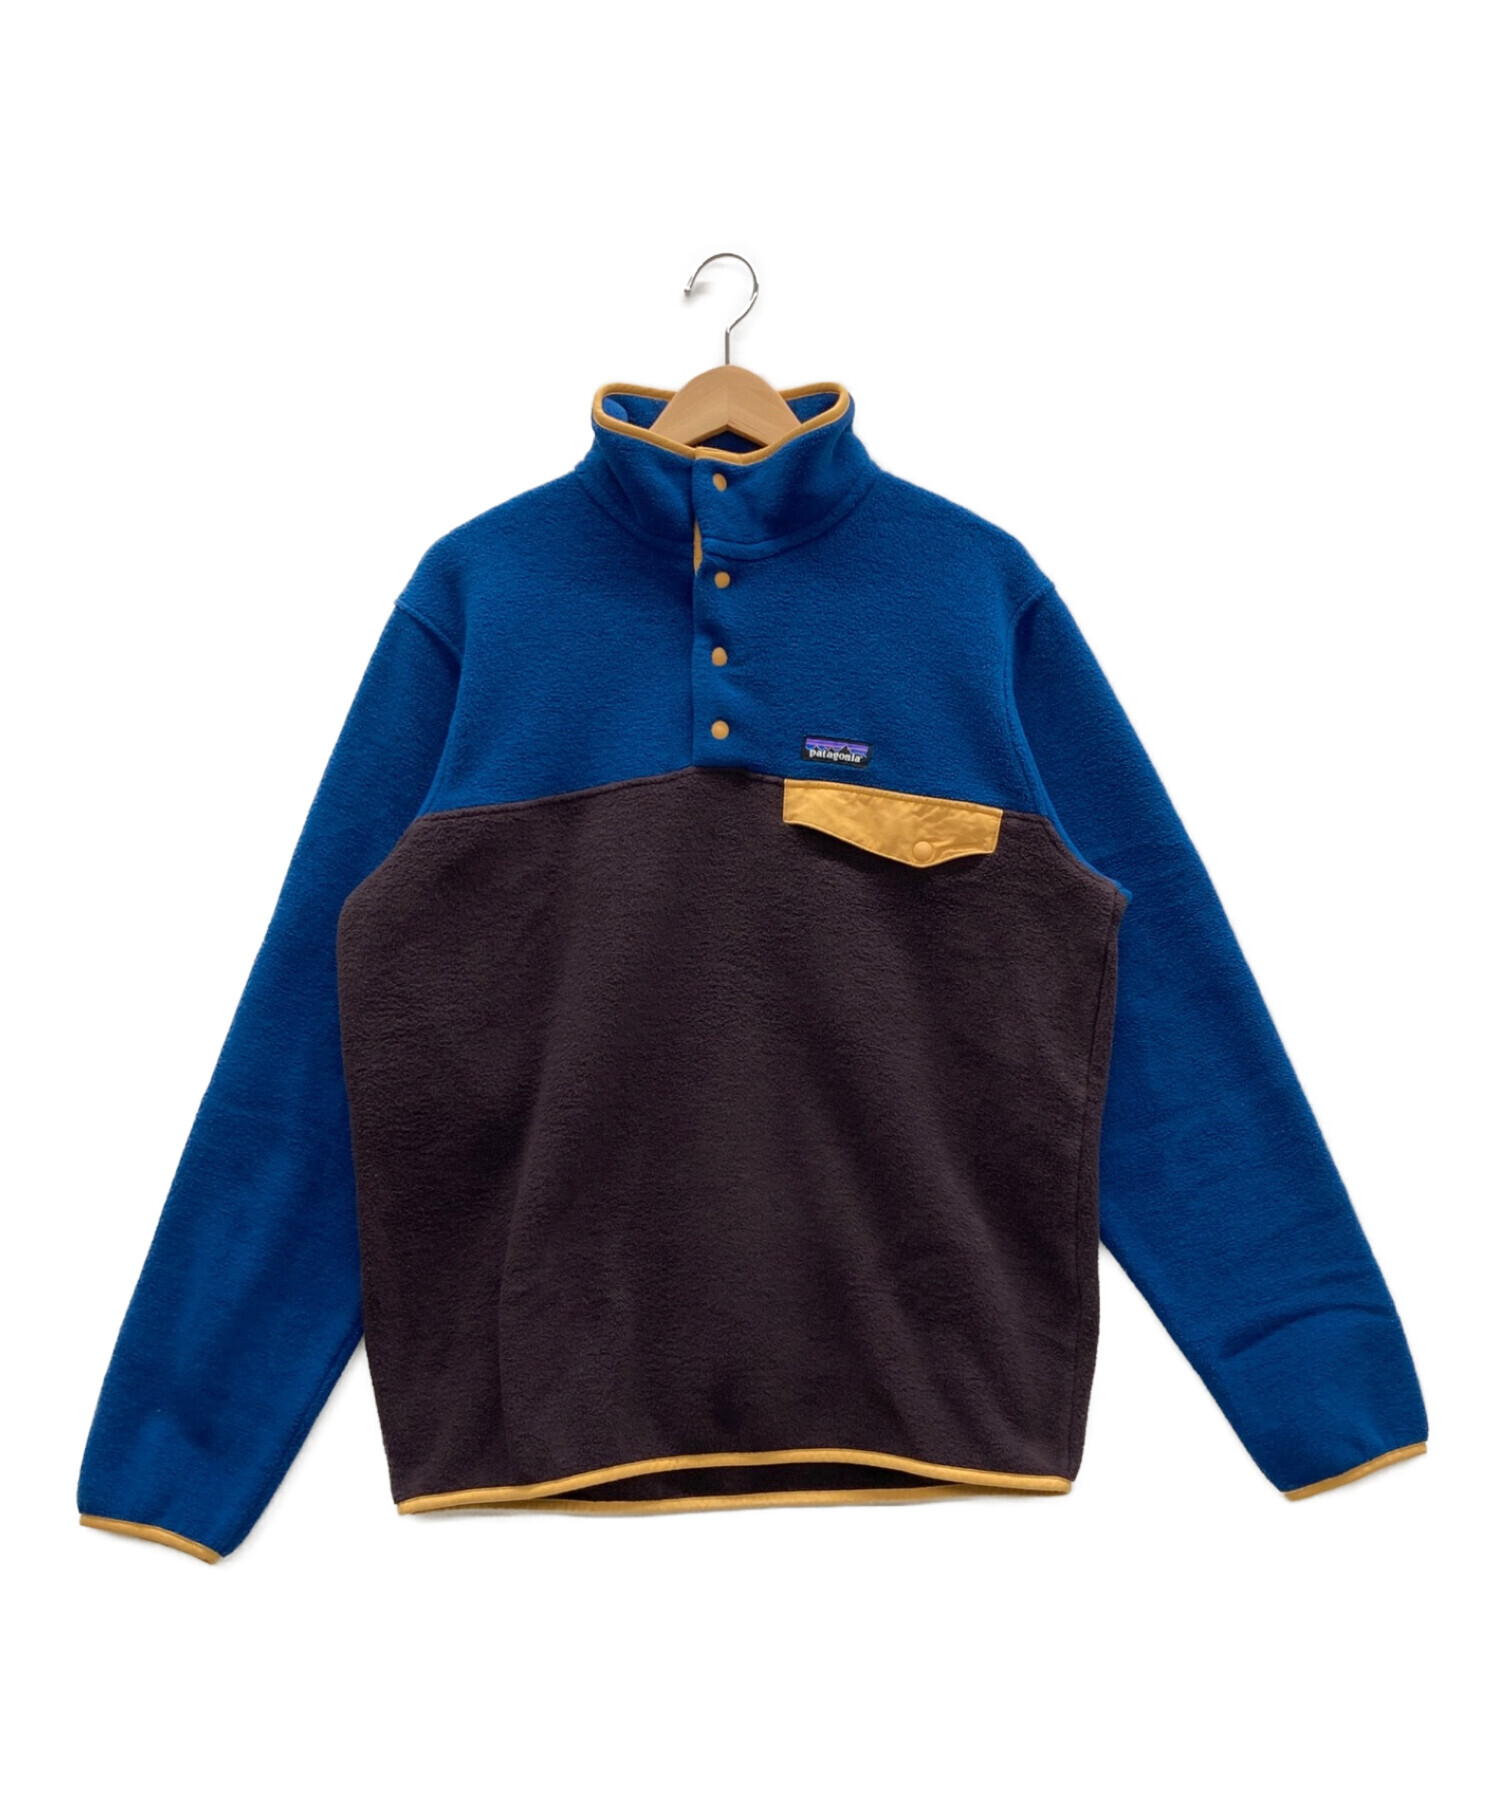 Patagonia (パタゴニア) フリースジャケット ブルー×パープル サイズ:M 未使用品